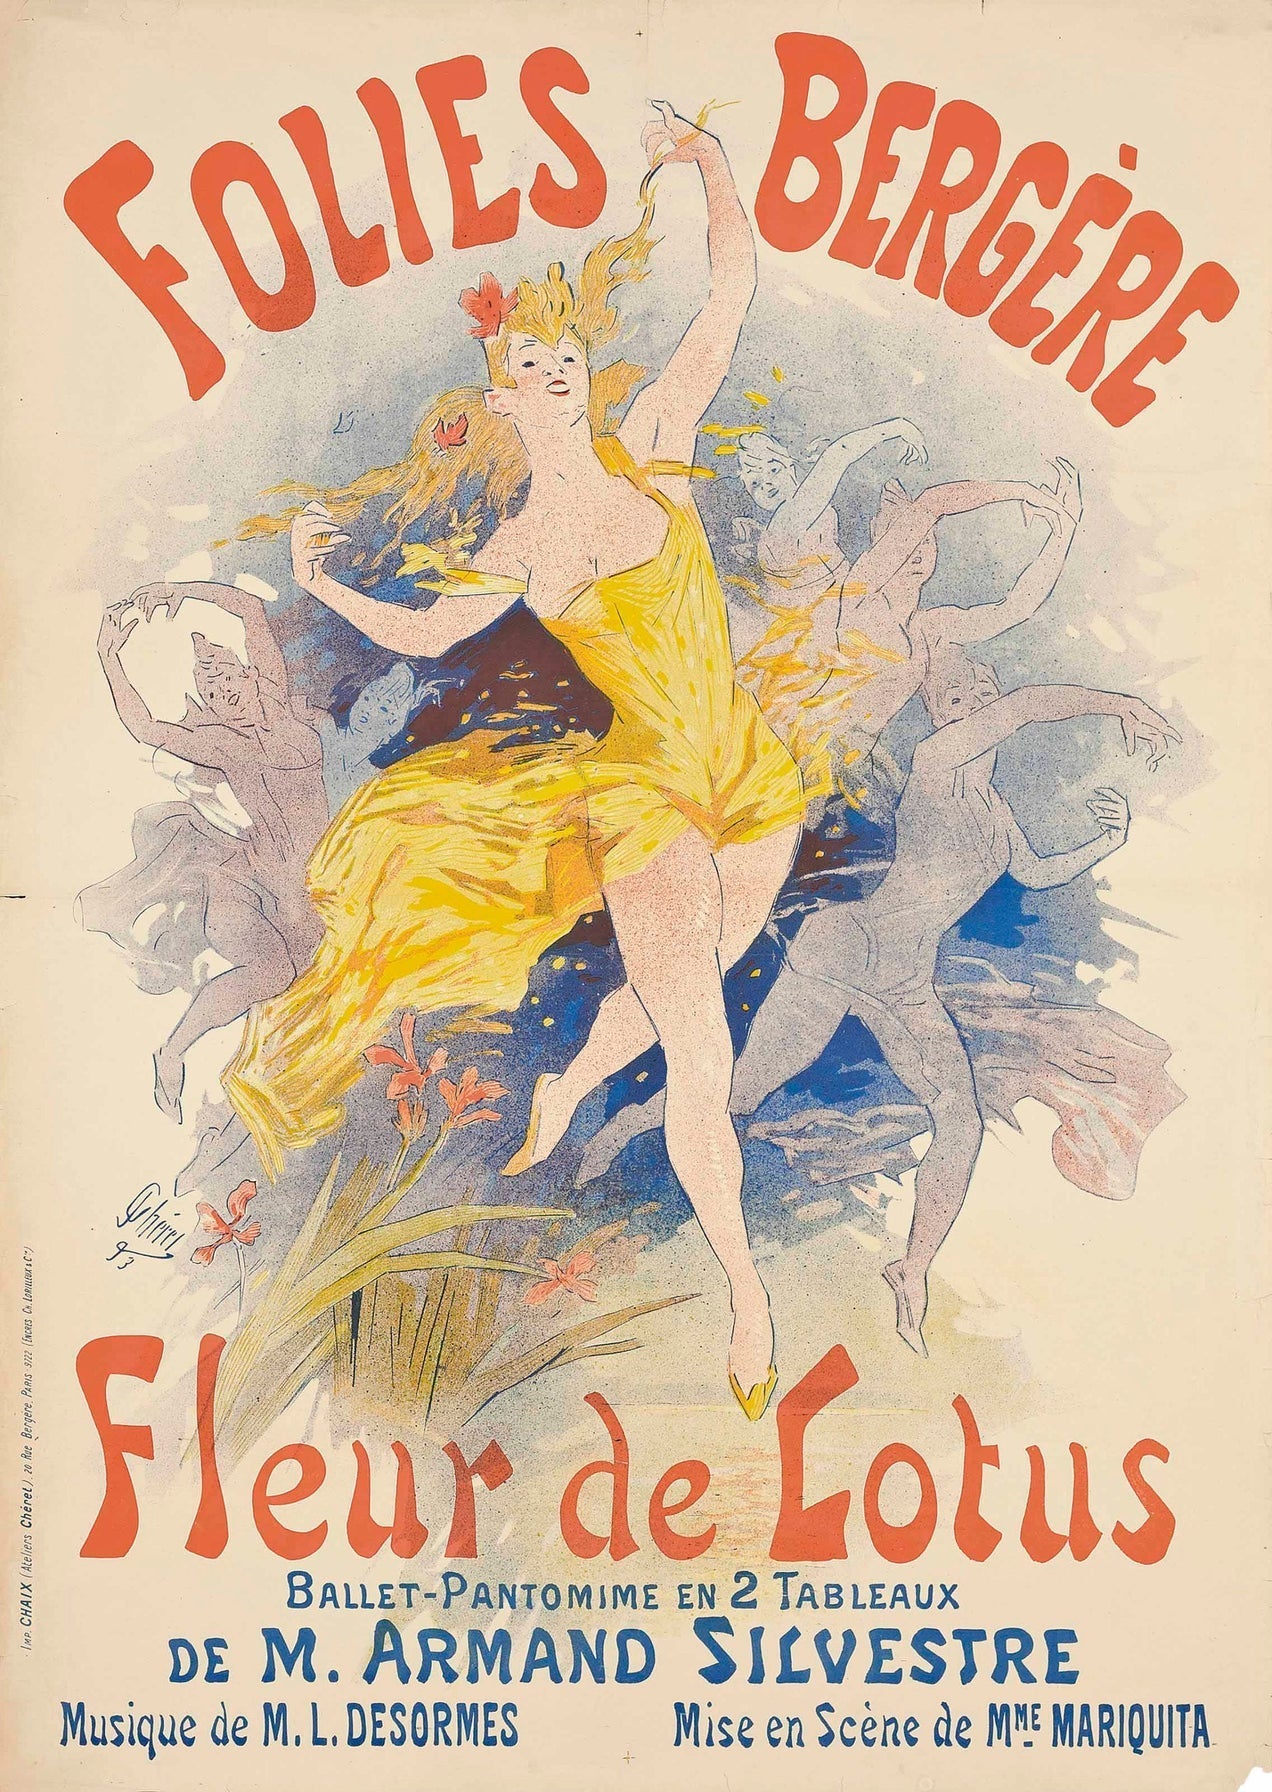 Fleur de Lotus Ballet poster, Paris | Jules Cheret 1890s posters Posters, Prints, & Visual Artwork The Trumpet Shop   